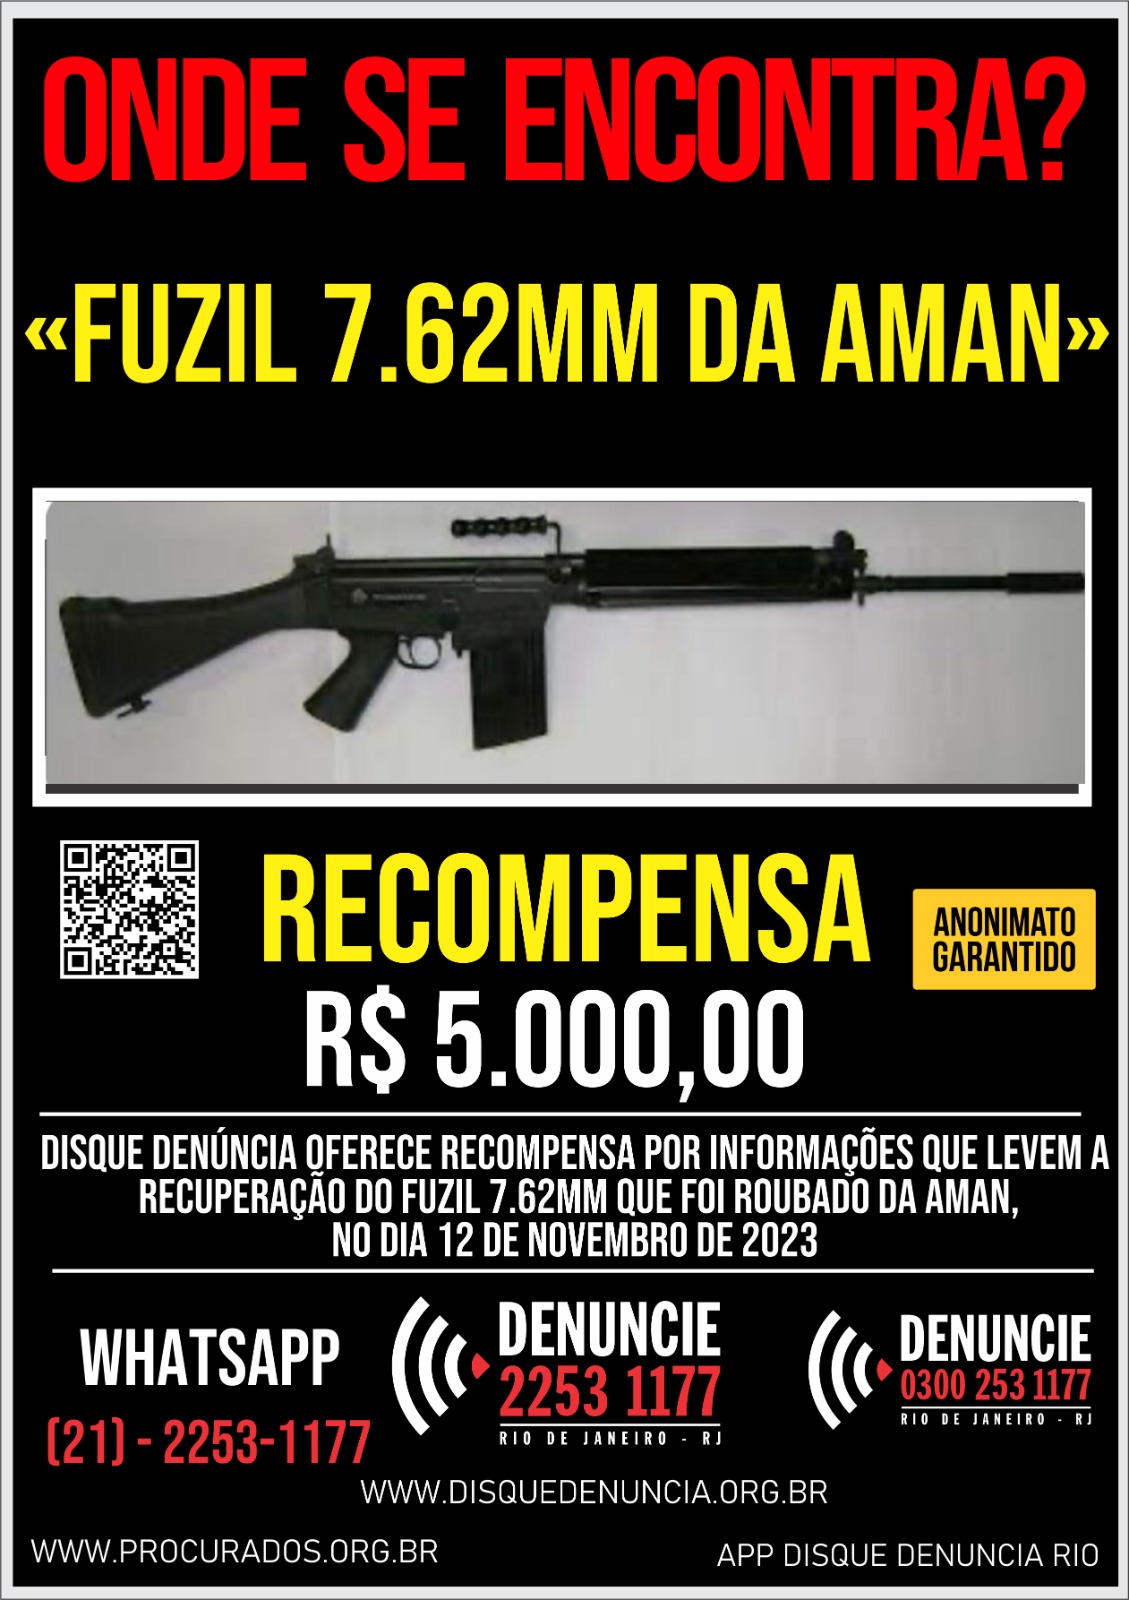 Disque Denúncia divulga cartaz para localizar fuzil roubado na AMAN, em Resende